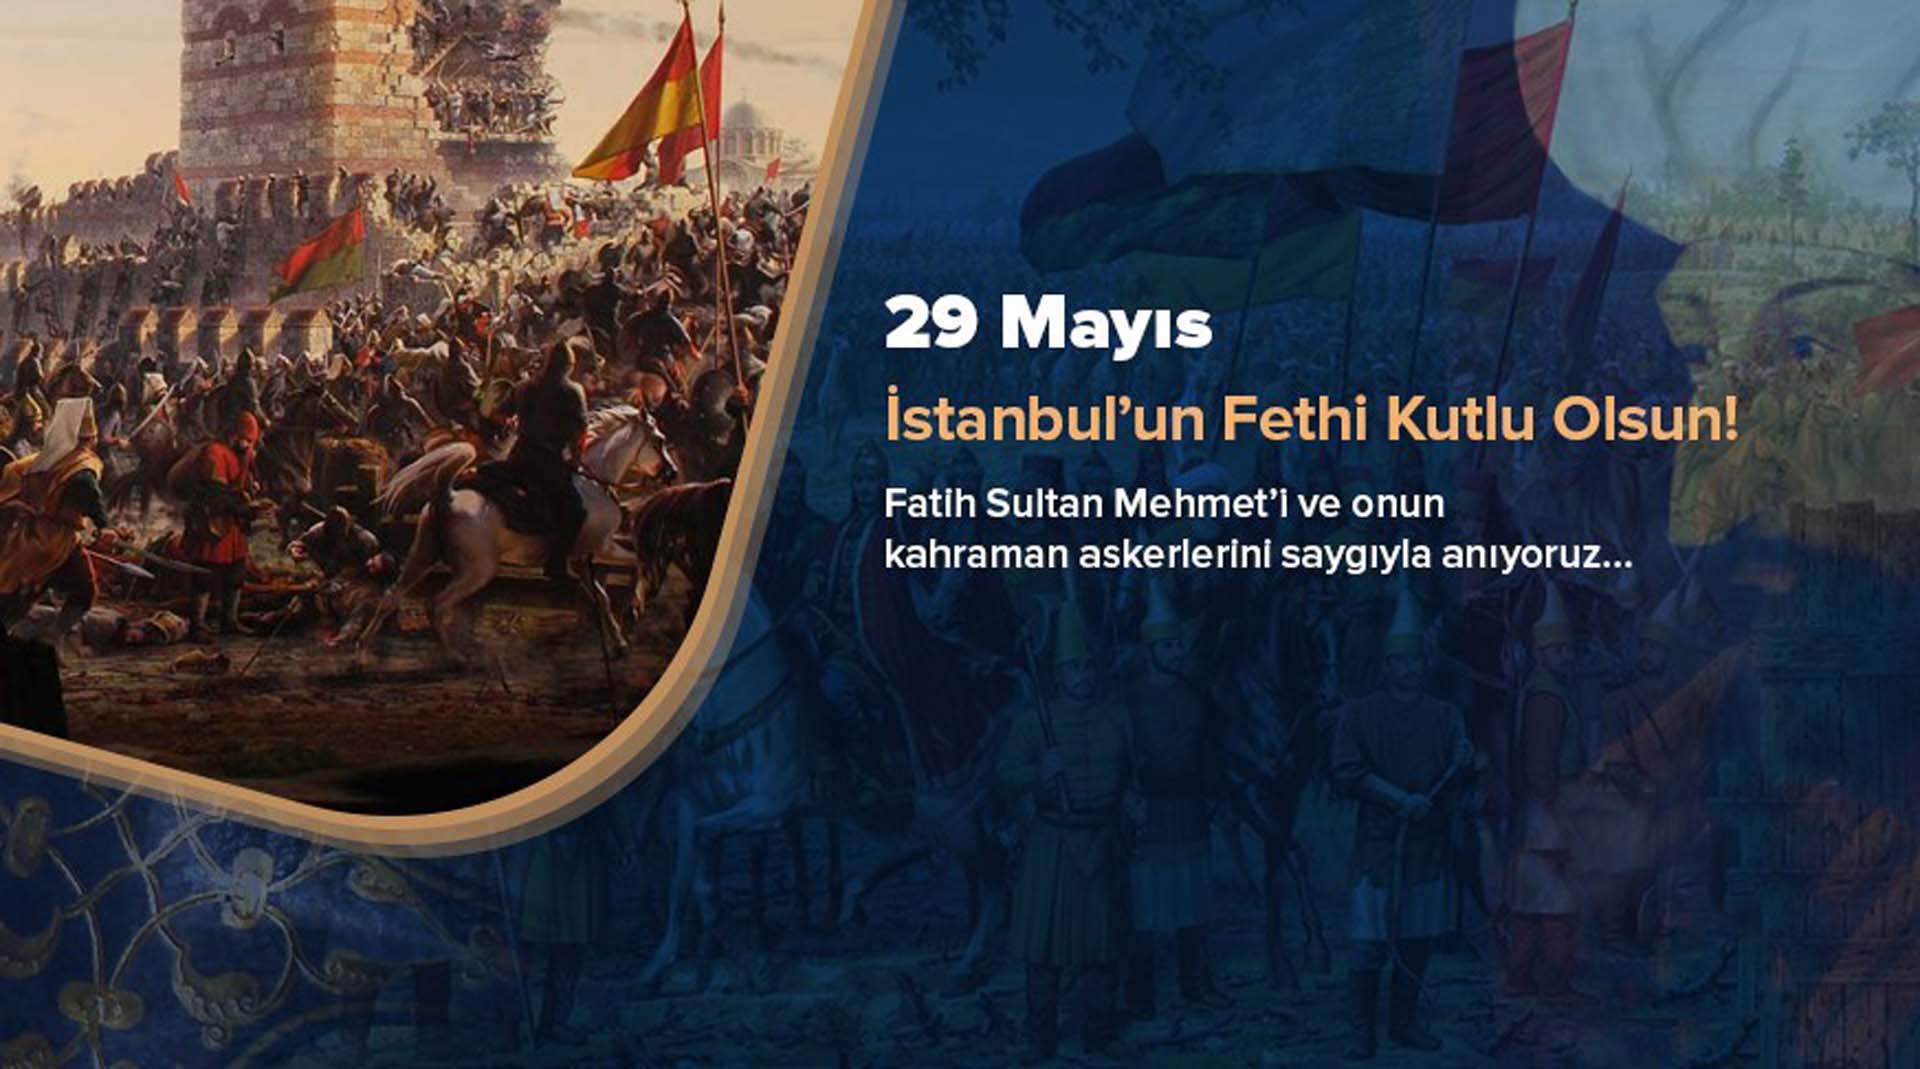 1453 İstanbul'un fethi ile ilgili sözler, mesajlar 2022 | İstanbul'un fethinin 569.yıldönümü ile ilgili resimli mesajlar 